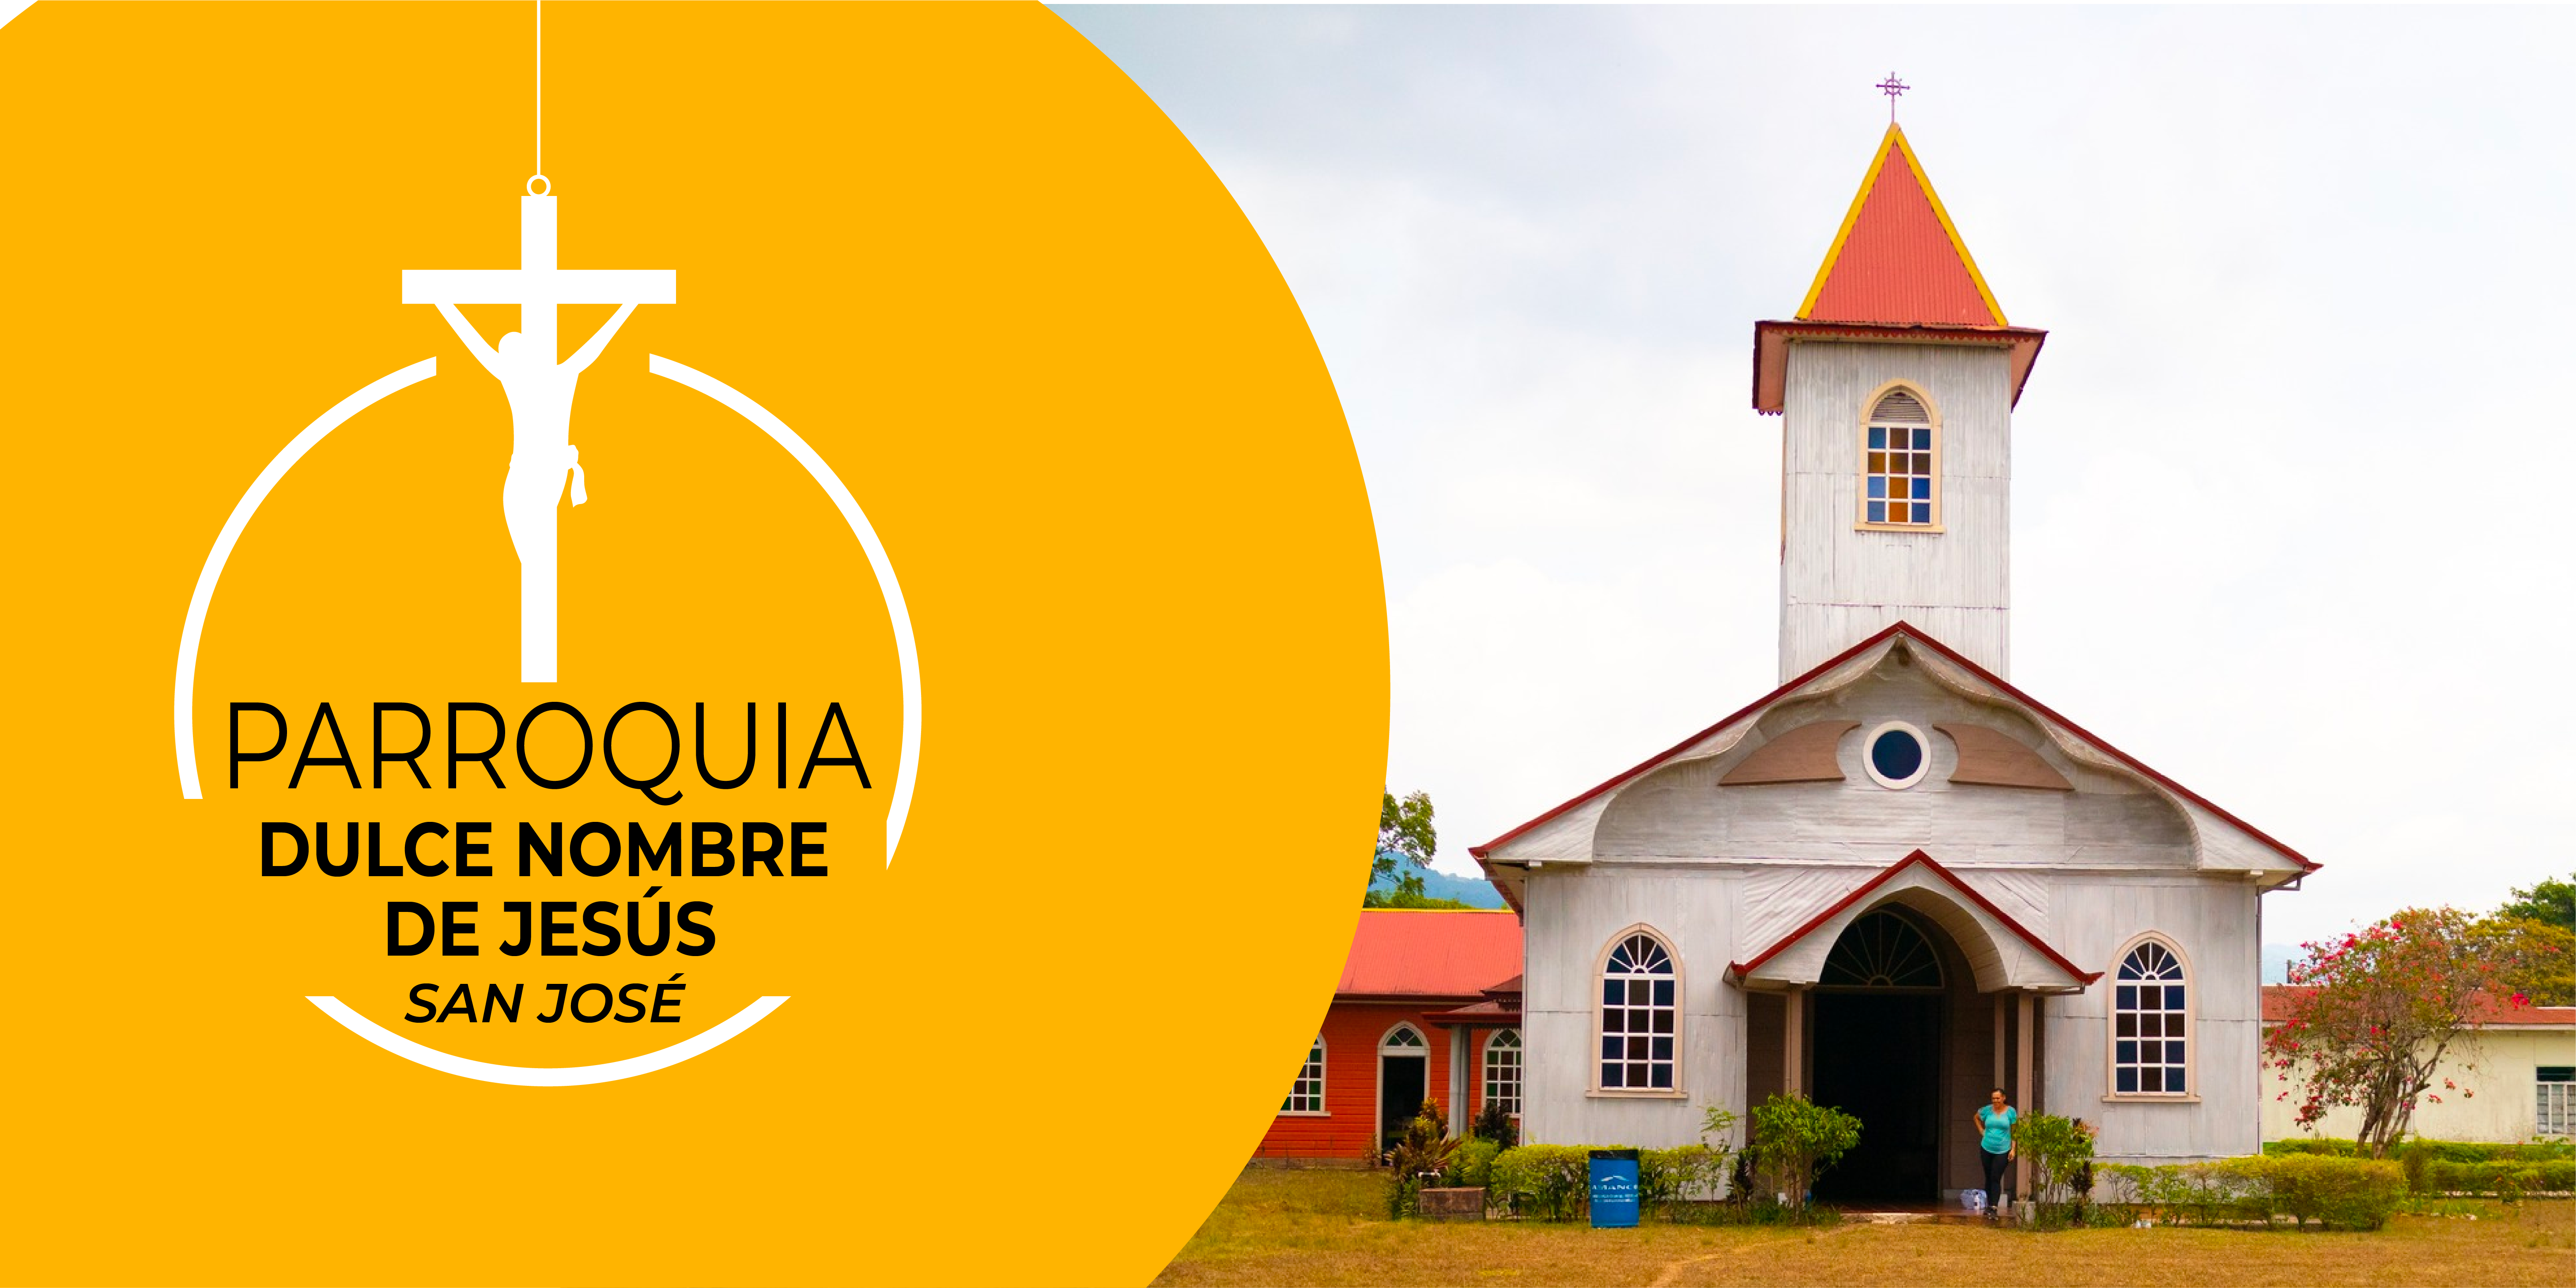 Horarios, dirección y teléfonos de Parroquia Dulce Nombre de Jesús, Guayabo